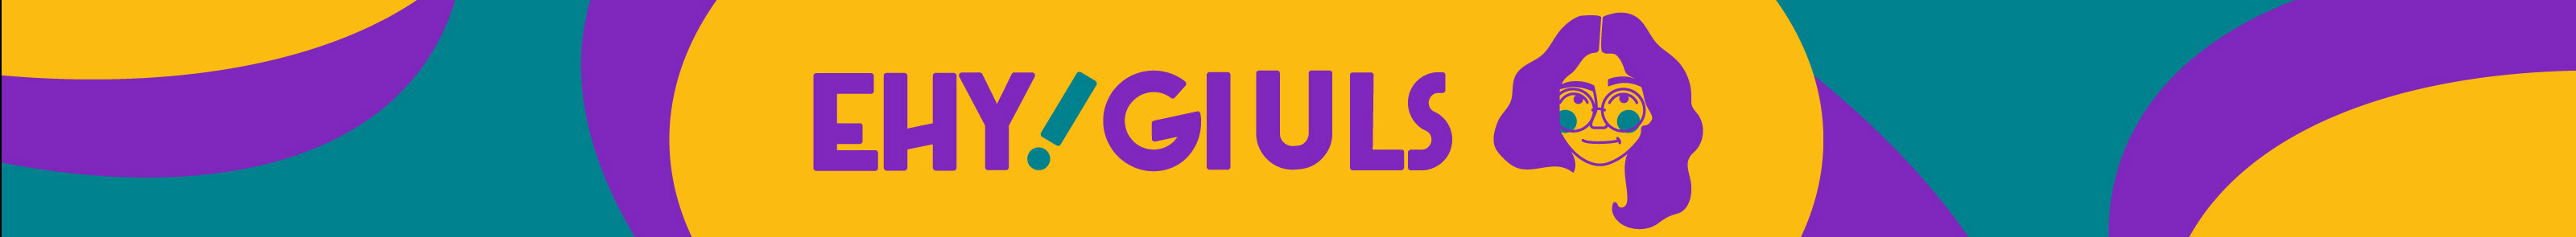 Giulia Pagano's profile banner